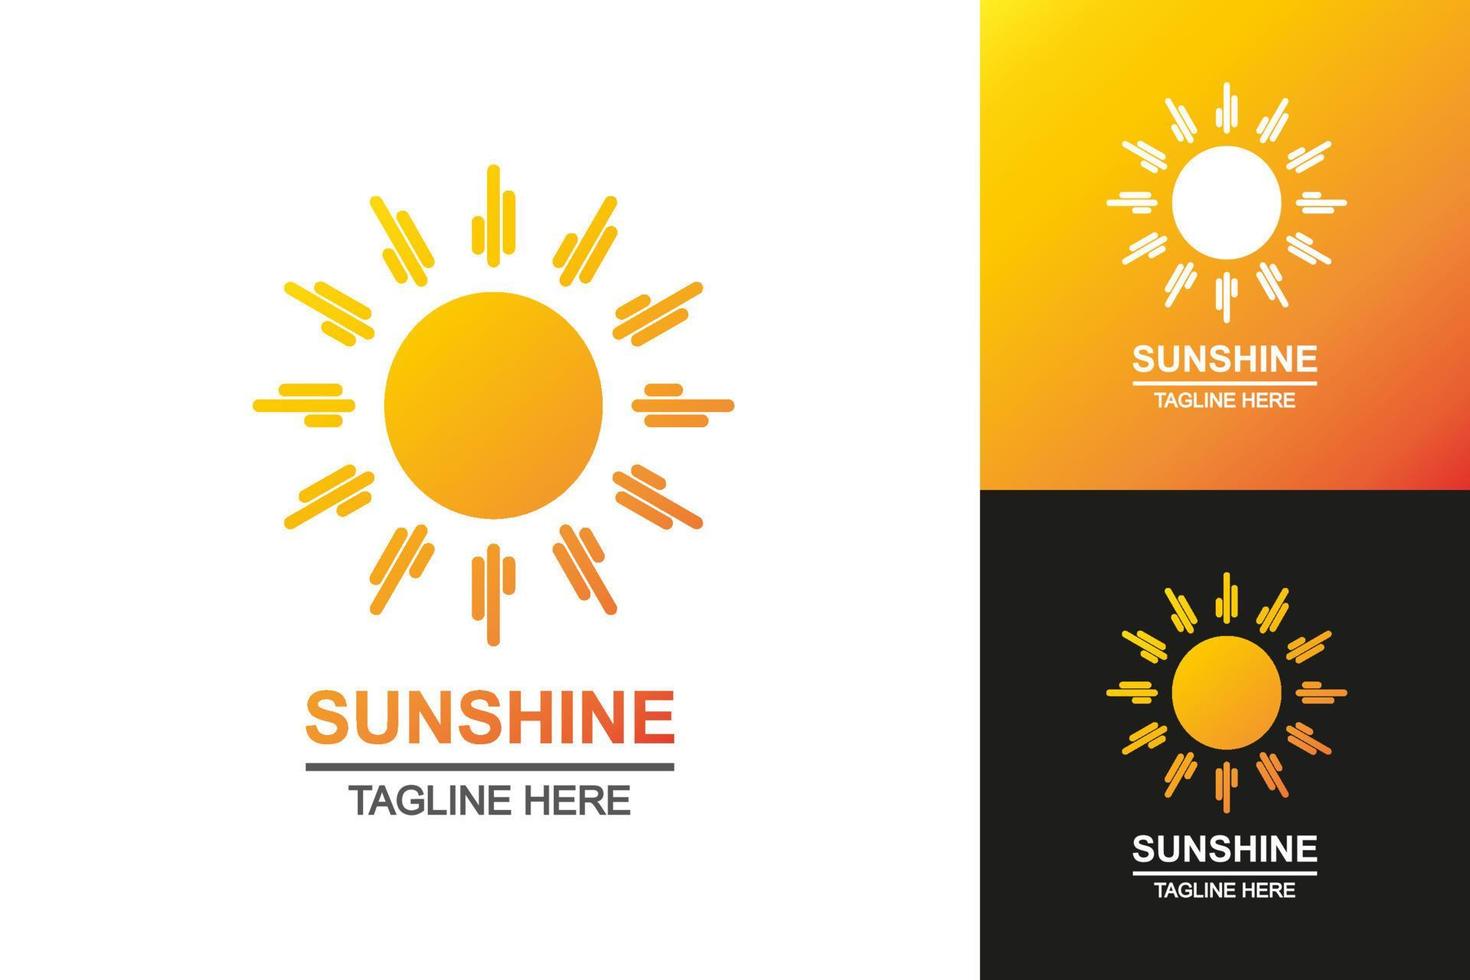 Sonnenschein-Logo setzt farbenfrohen Stil für Sommer-Emblem vektor